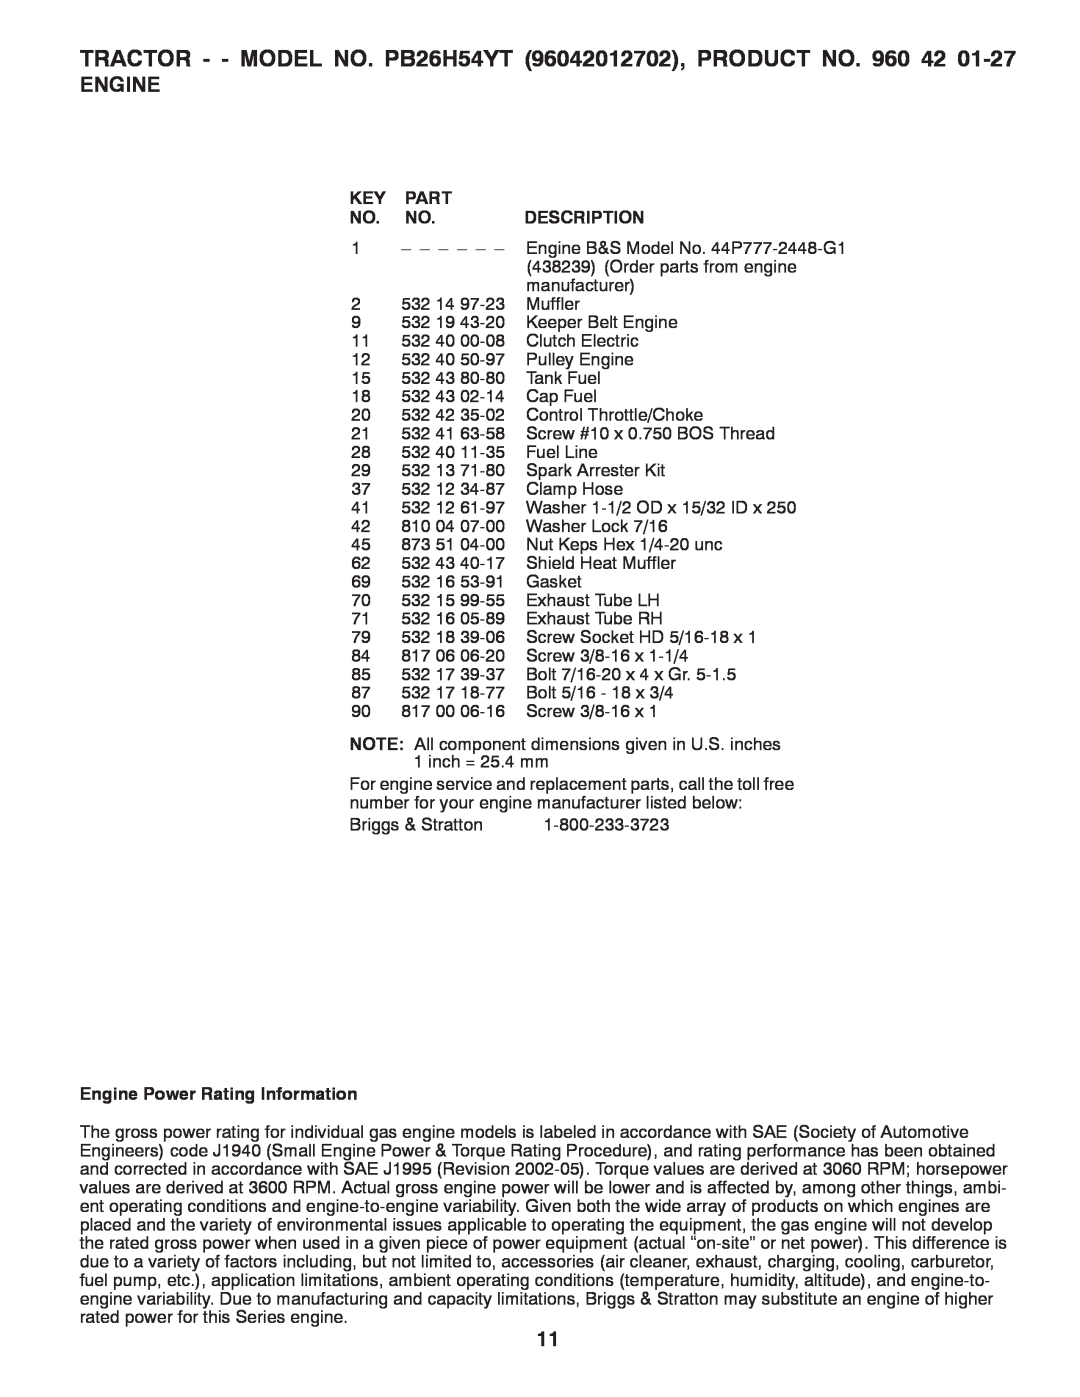 Poulan PB26H5YT manual Part, Description, Engine Power Rating Information 